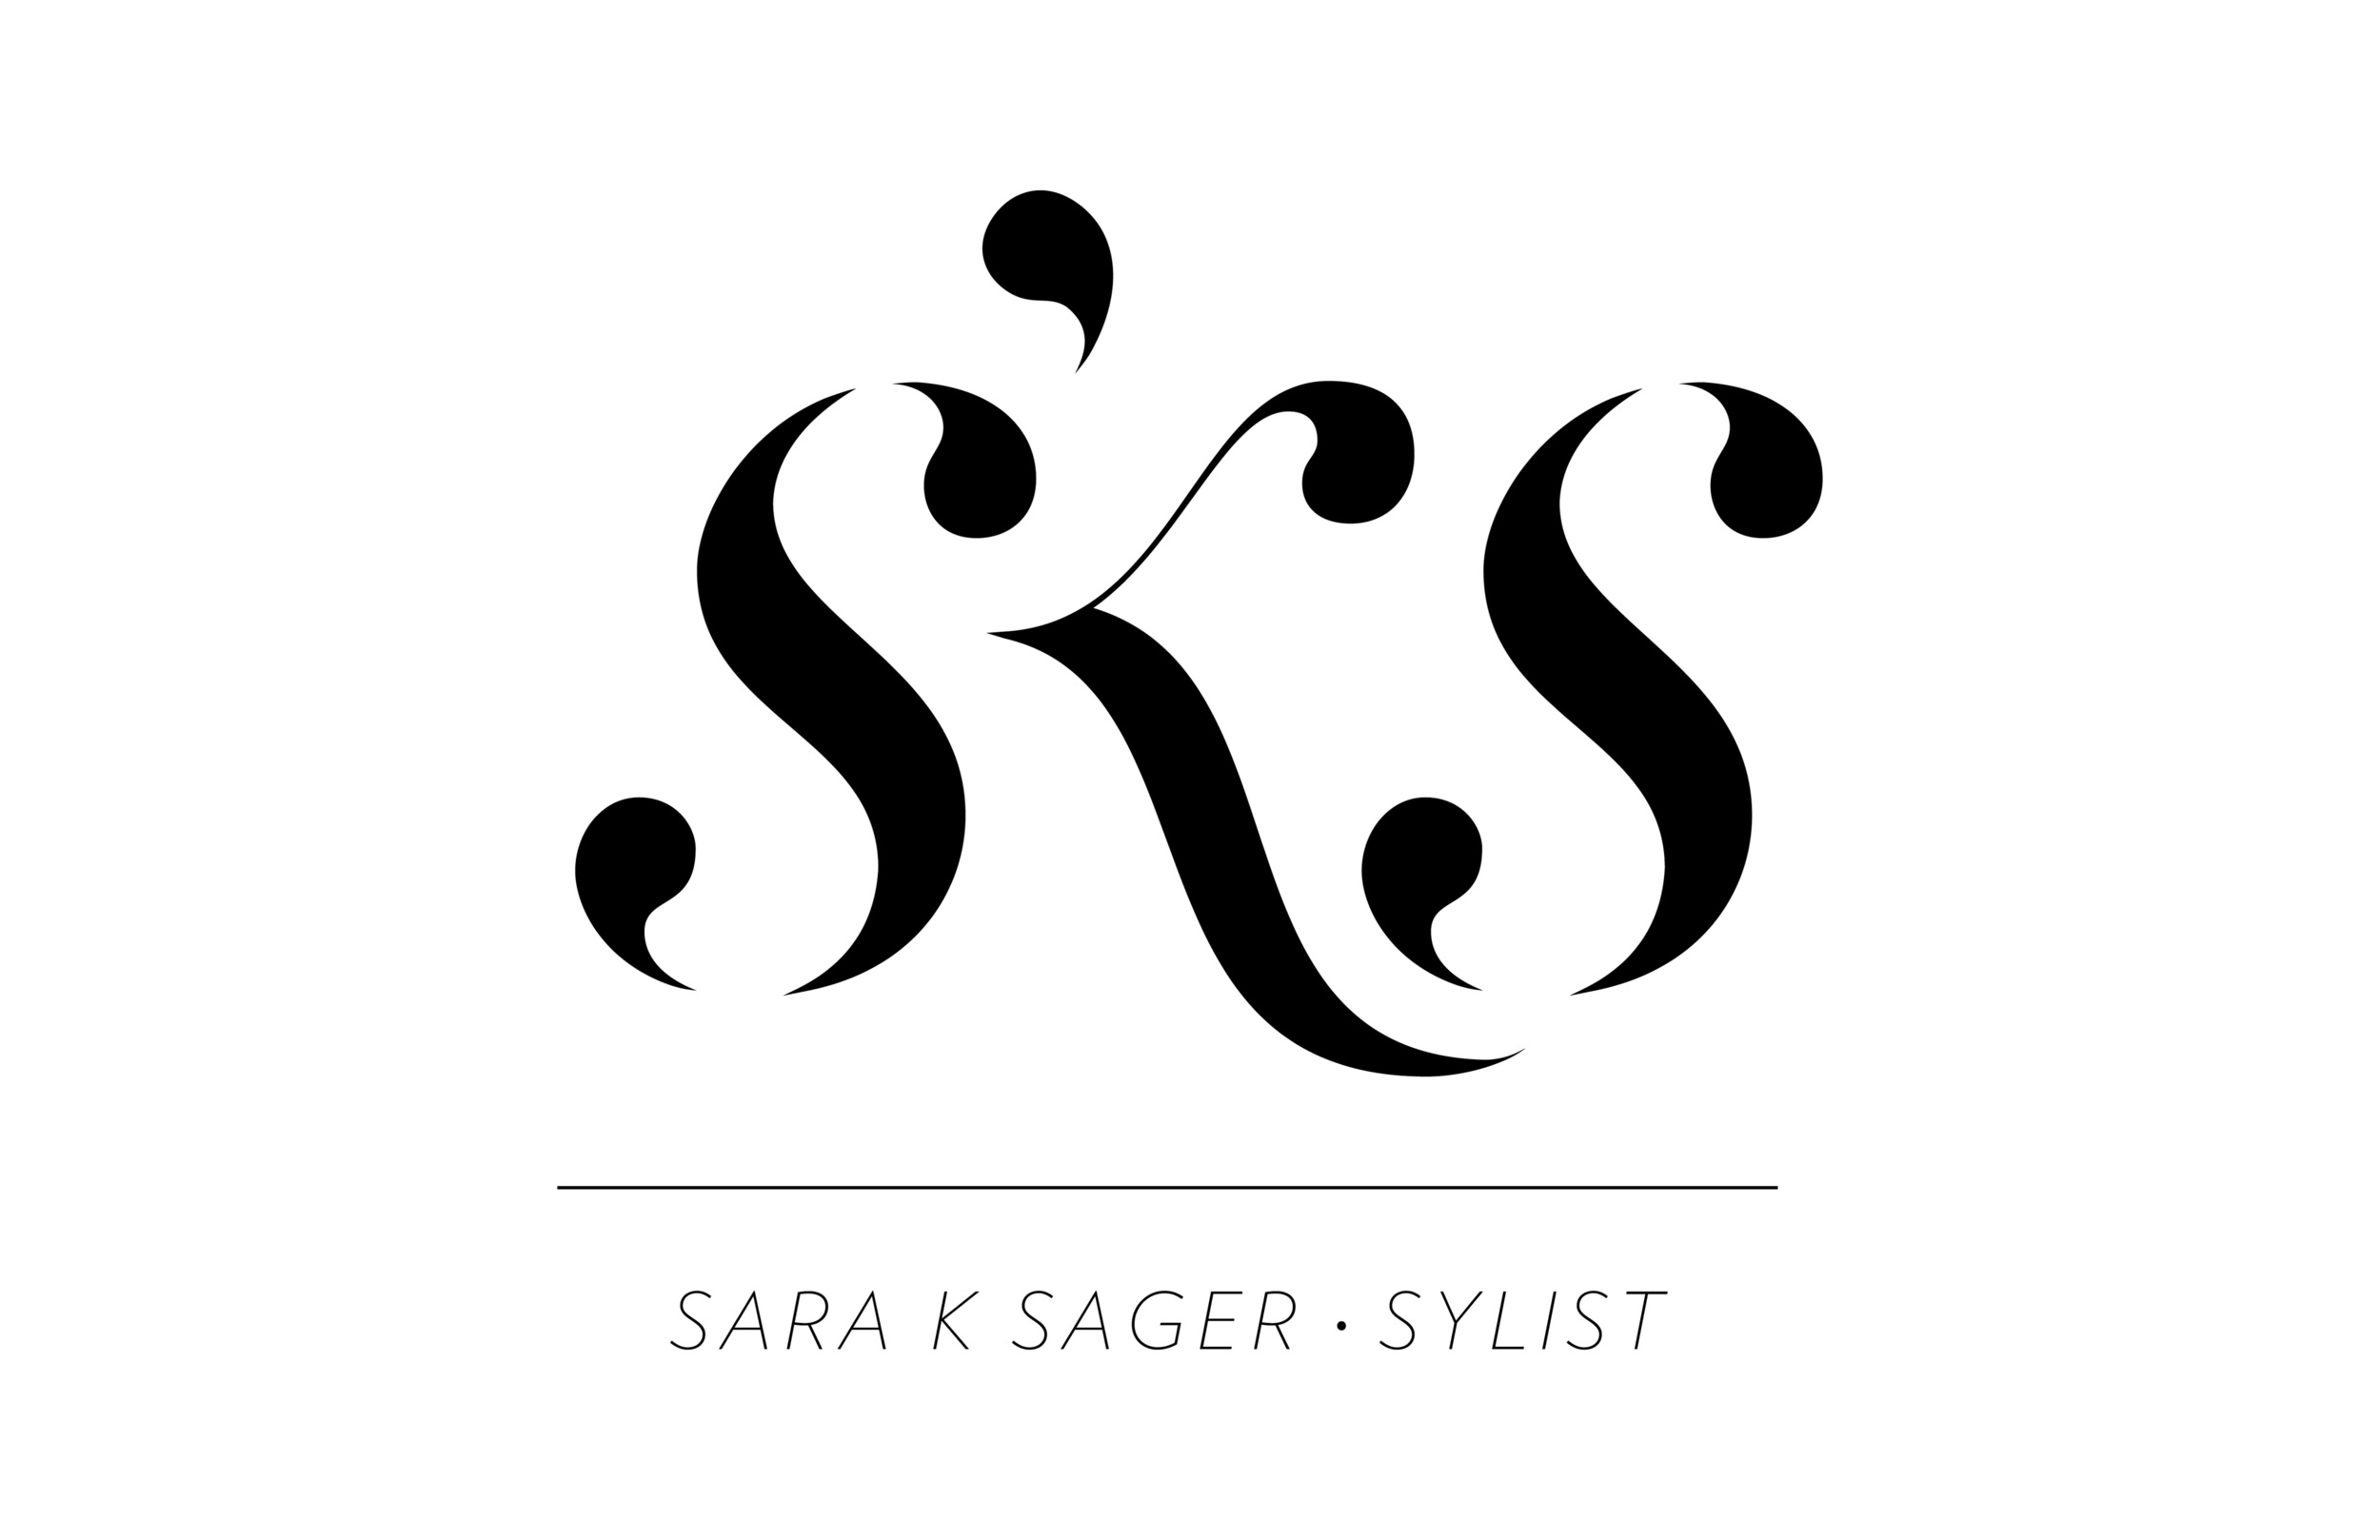 Saraksager-R3-logo_o.jpg